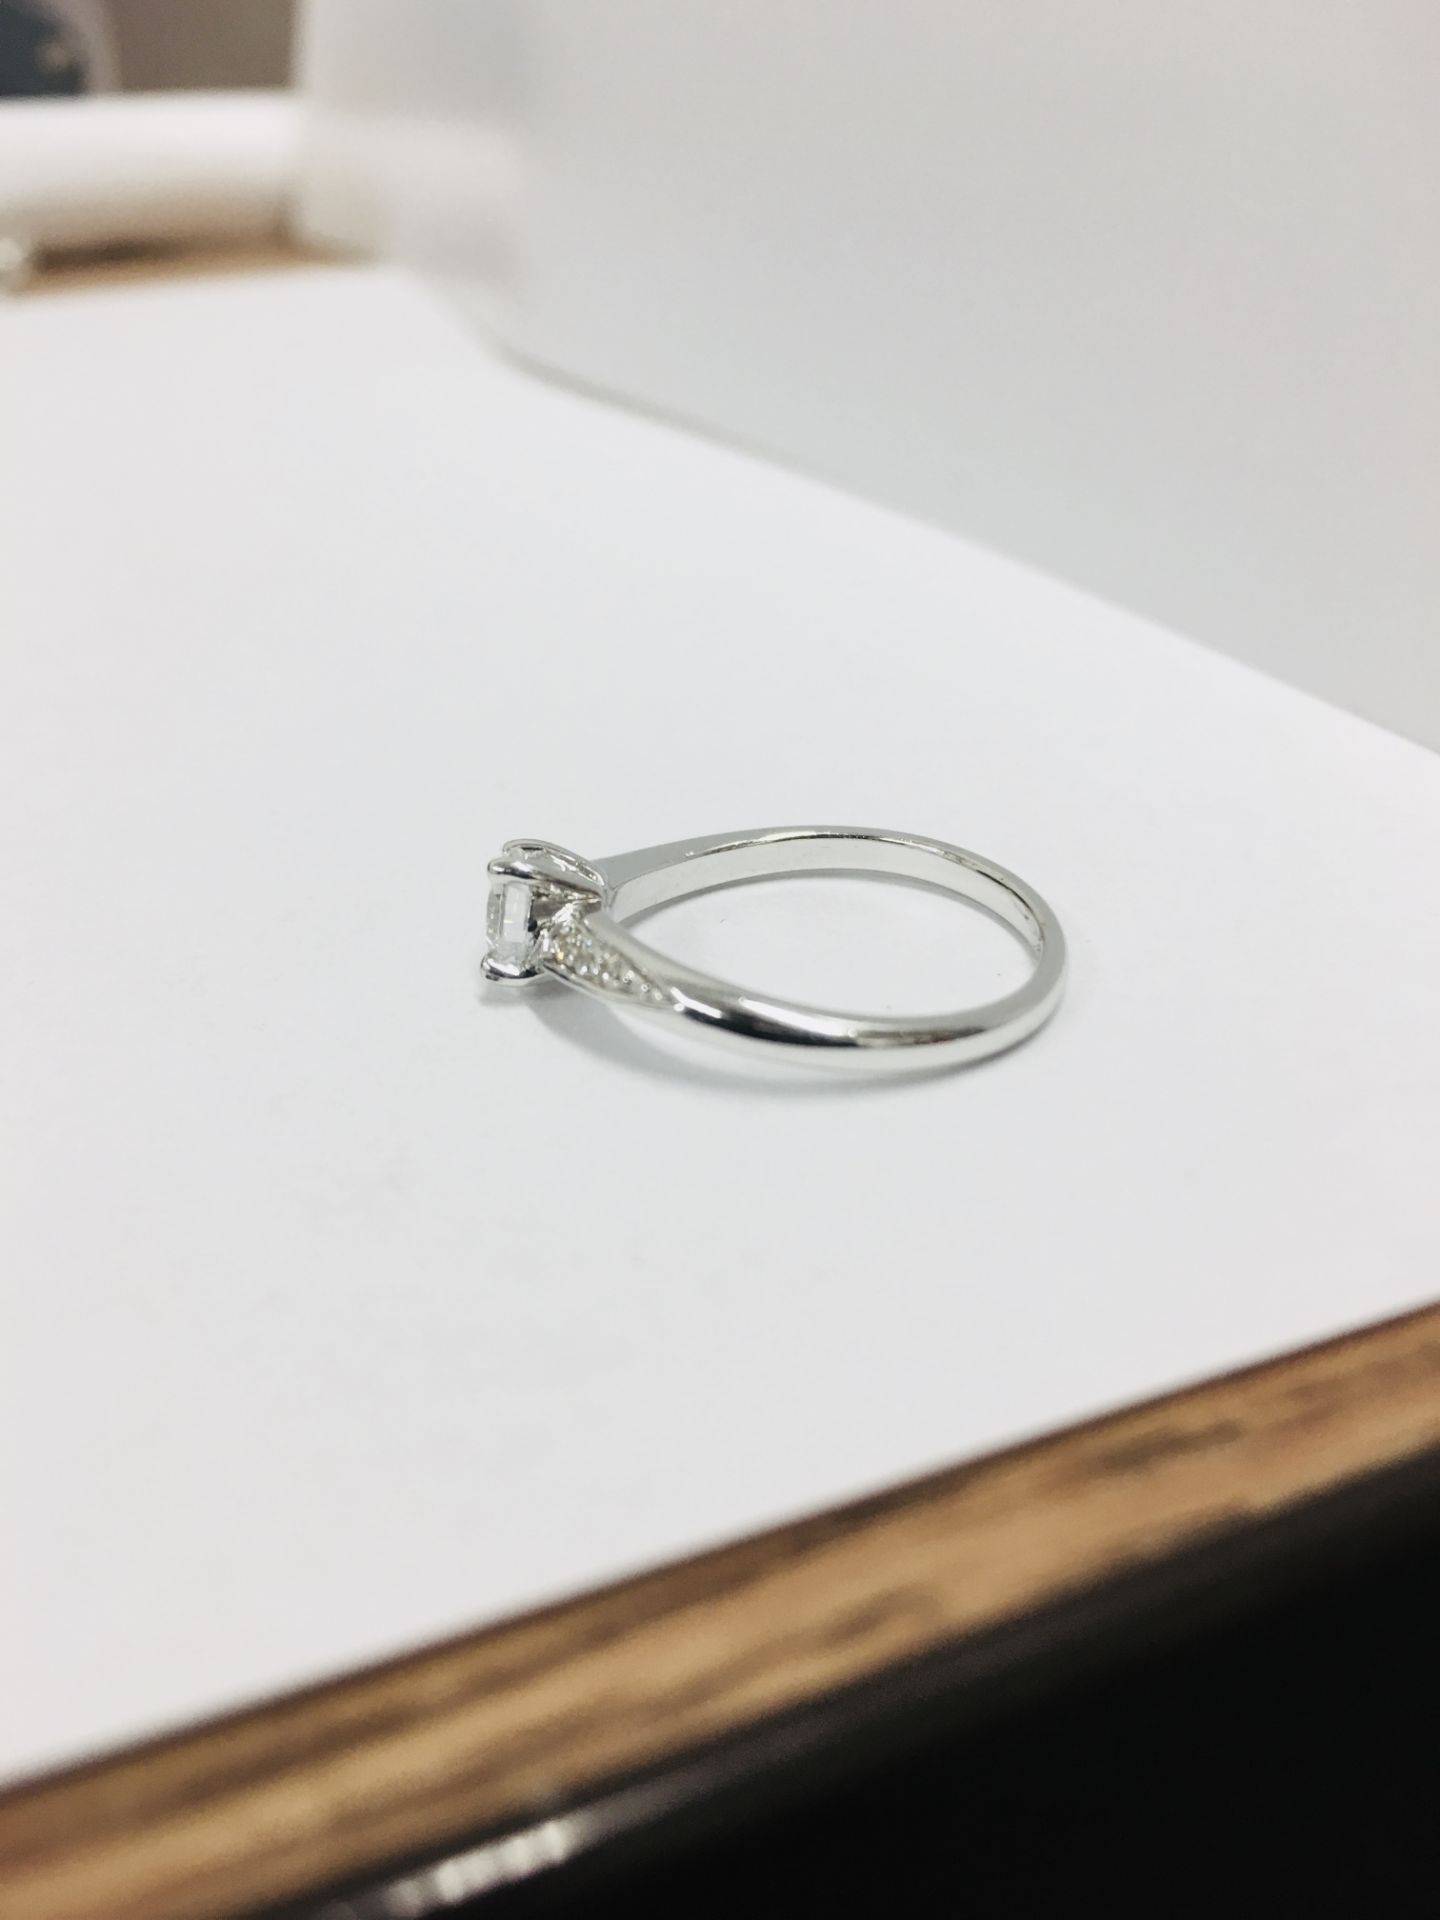 platinum damond solitaire ring,0.50ct brilliant cut diamond h colour vs clarity(clarity enhanced), - Bild 3 aus 3